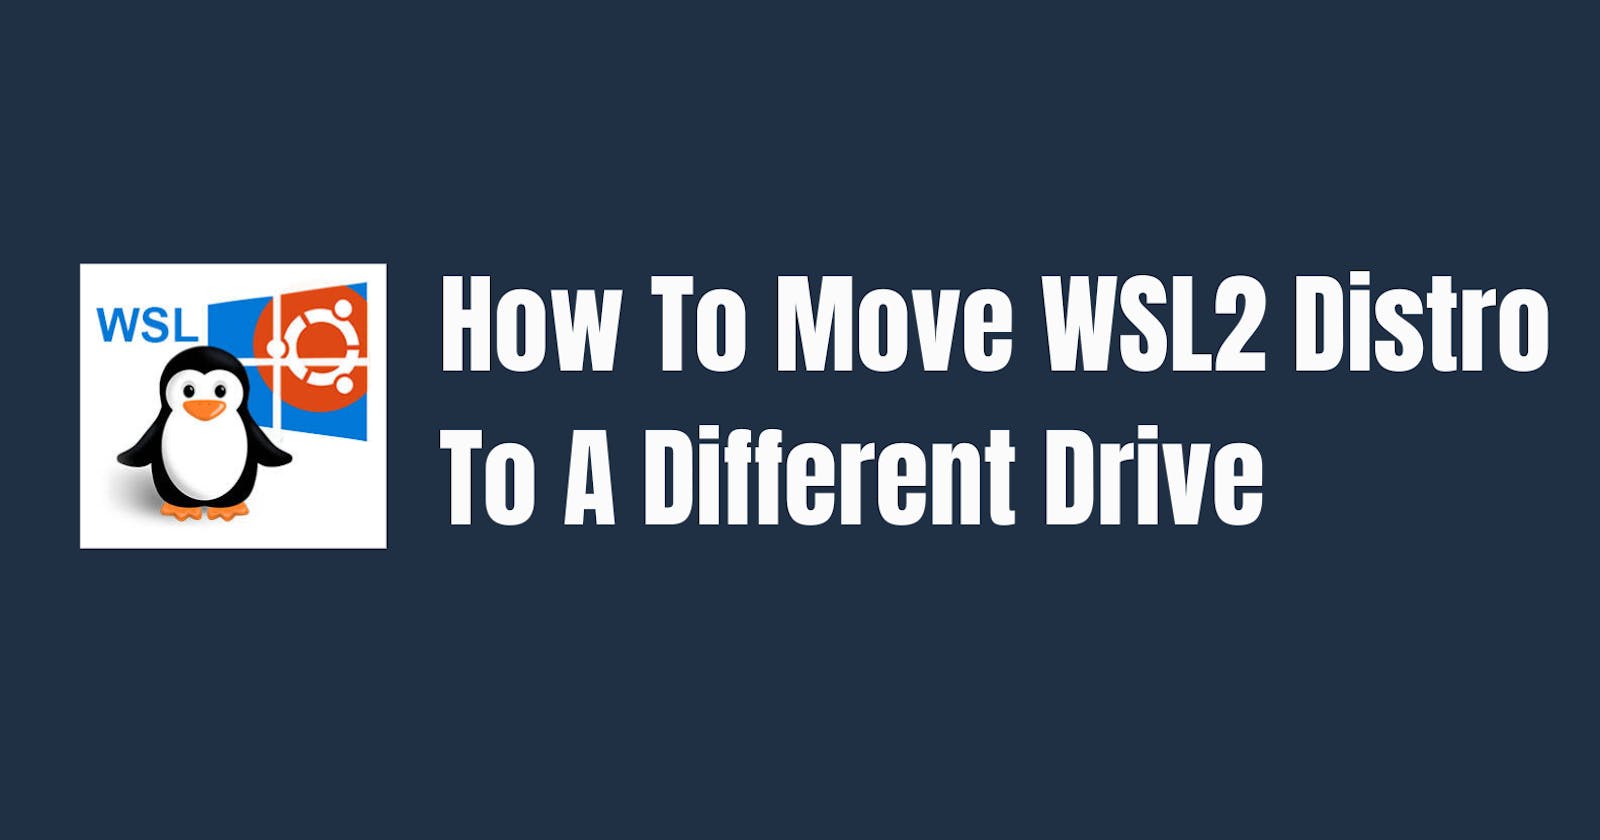 Move WSL2 Distro To A Different Drive